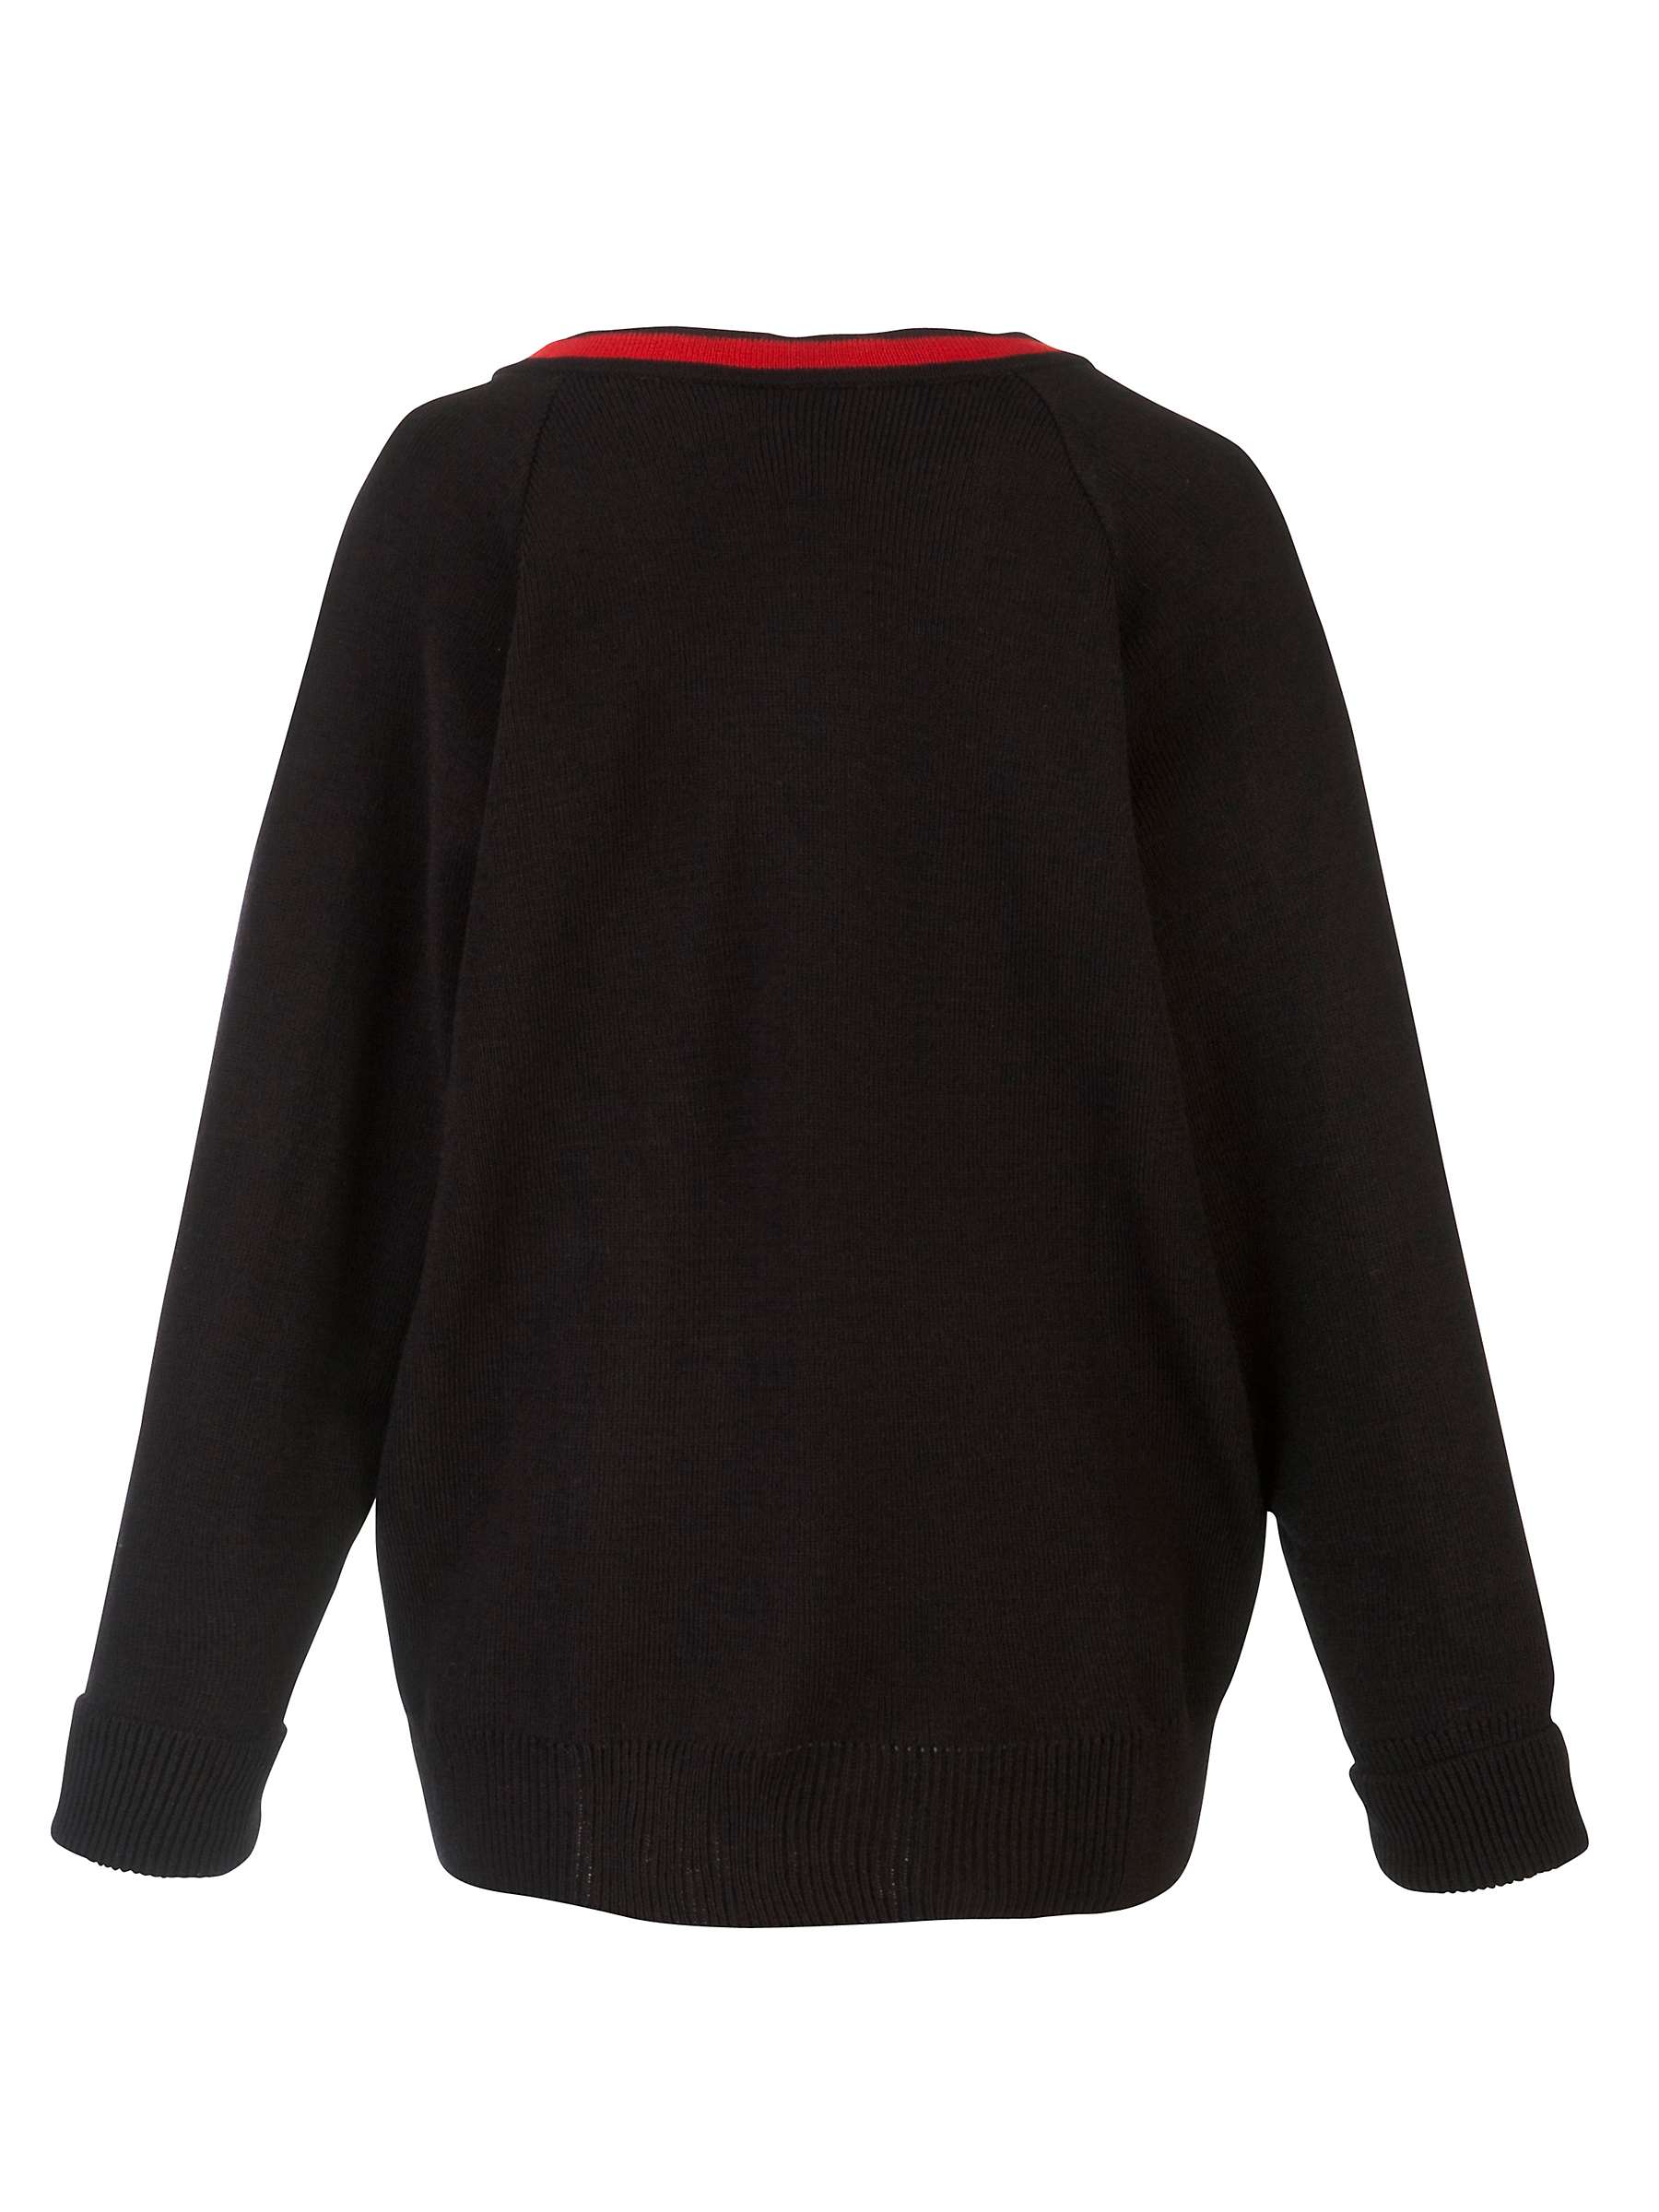 Buy Lady Margaret School Girls' Jumper, Black/Red Online at johnlewis.com